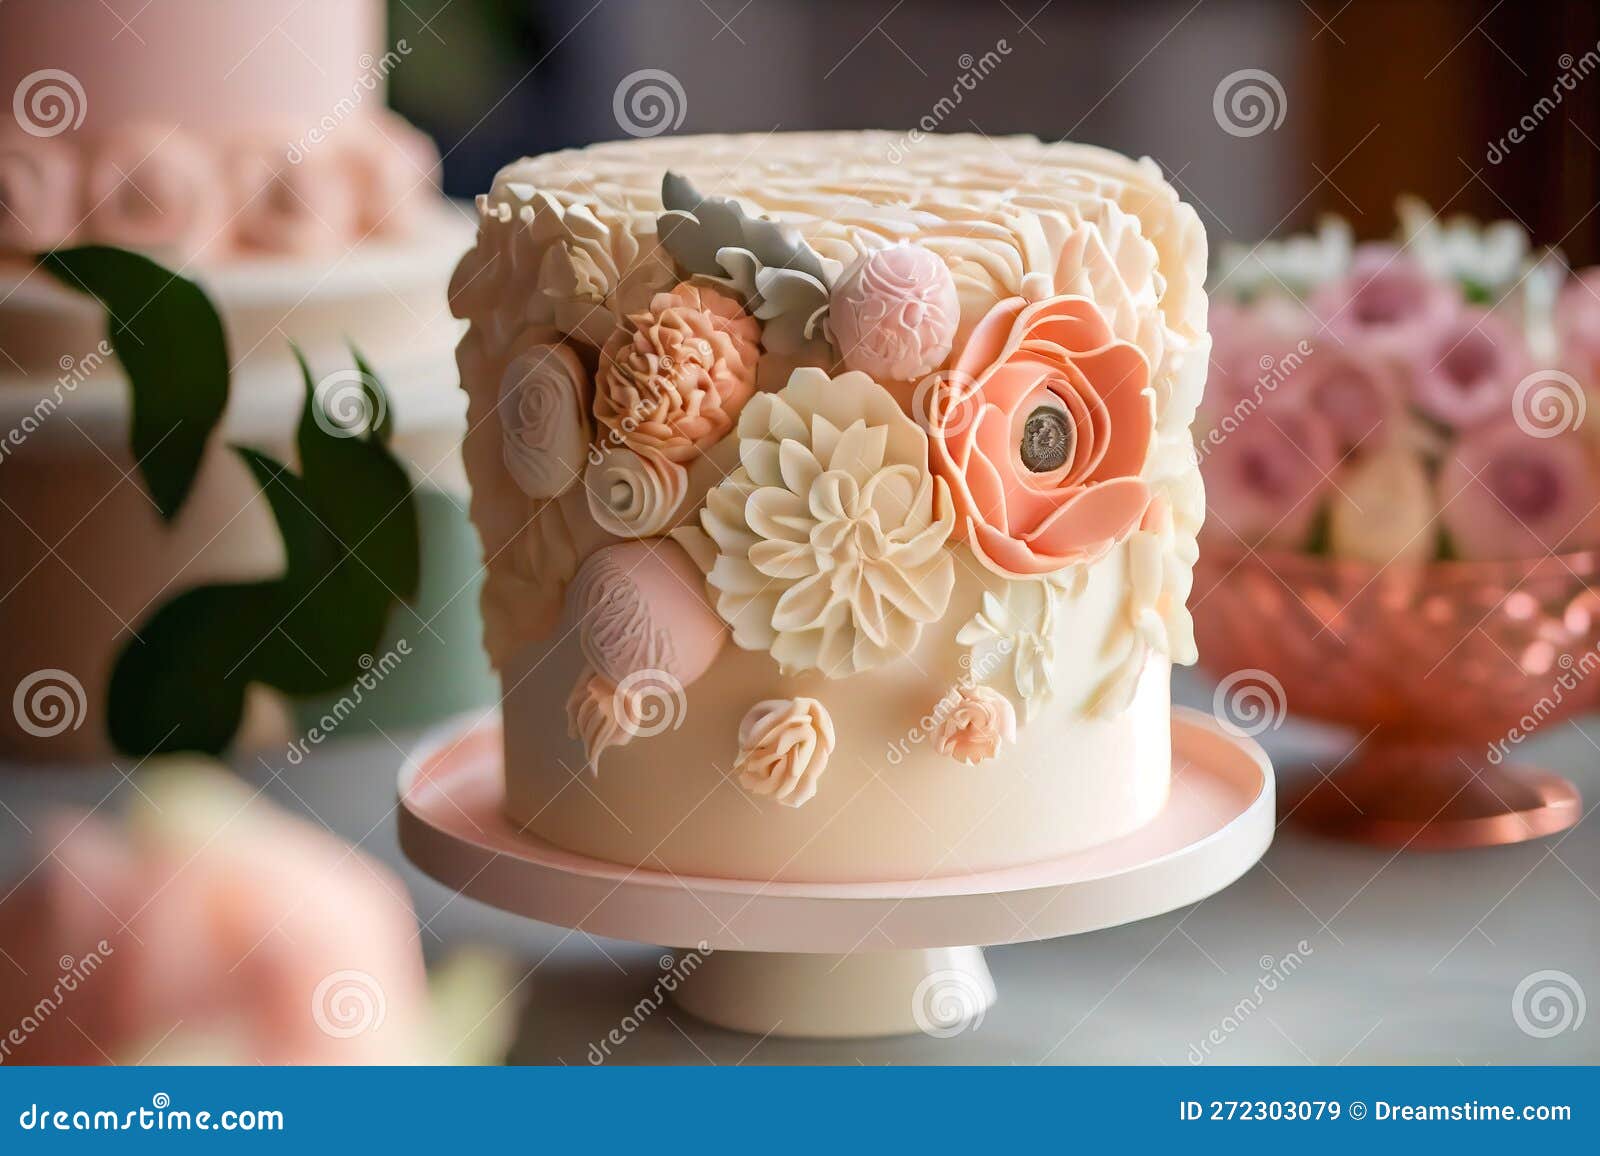 T'intorto - Tantissimi splendidi fiori per la torta a tema